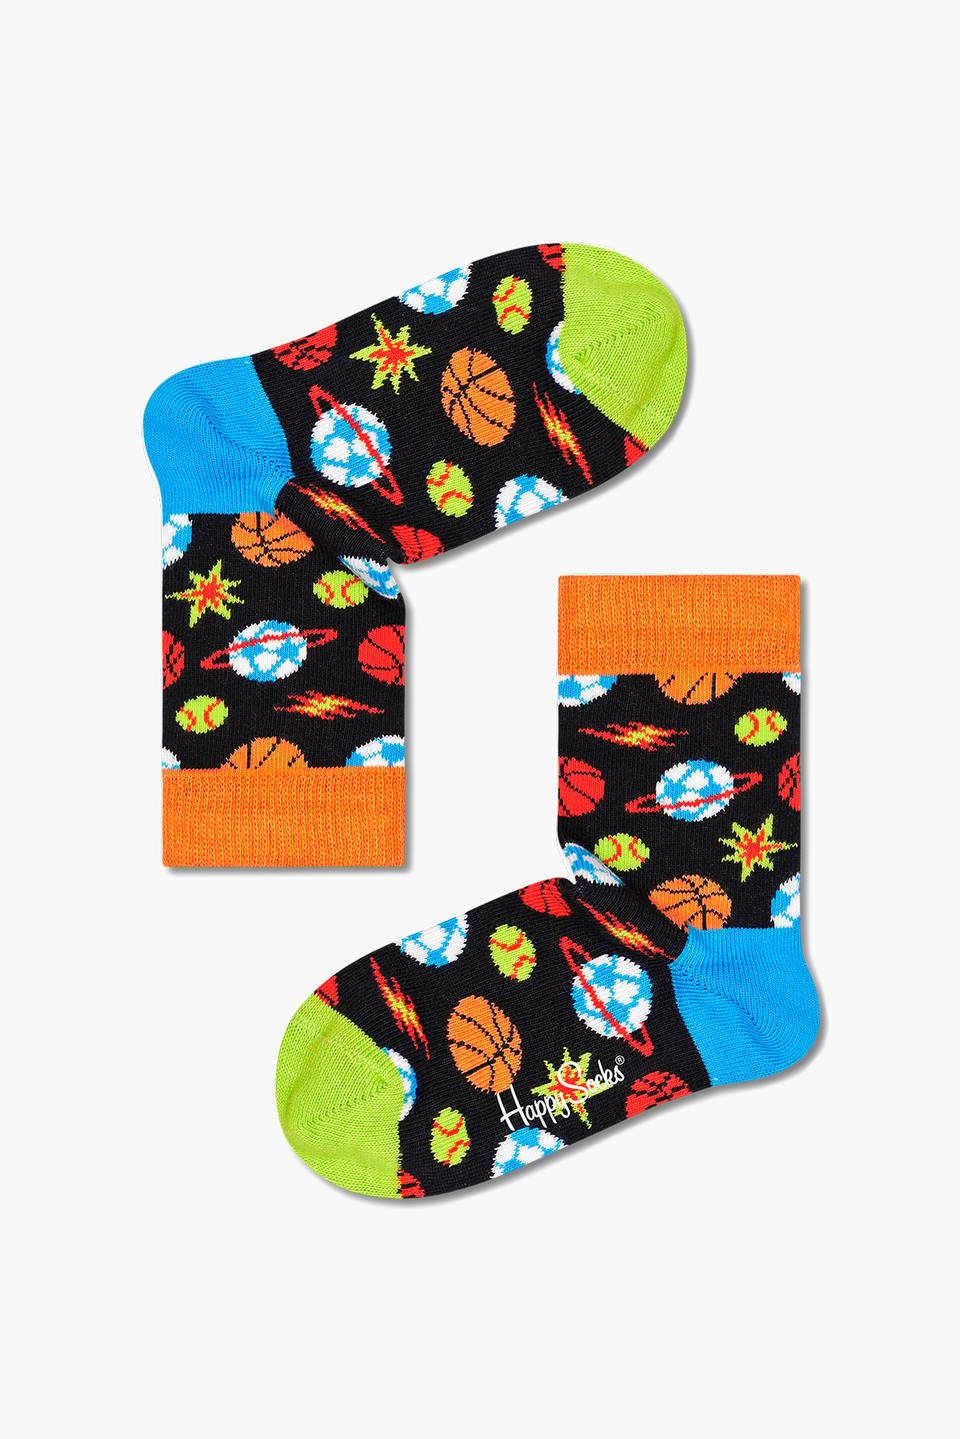 Skarpety Happy Socks Space XKSPA09-6500